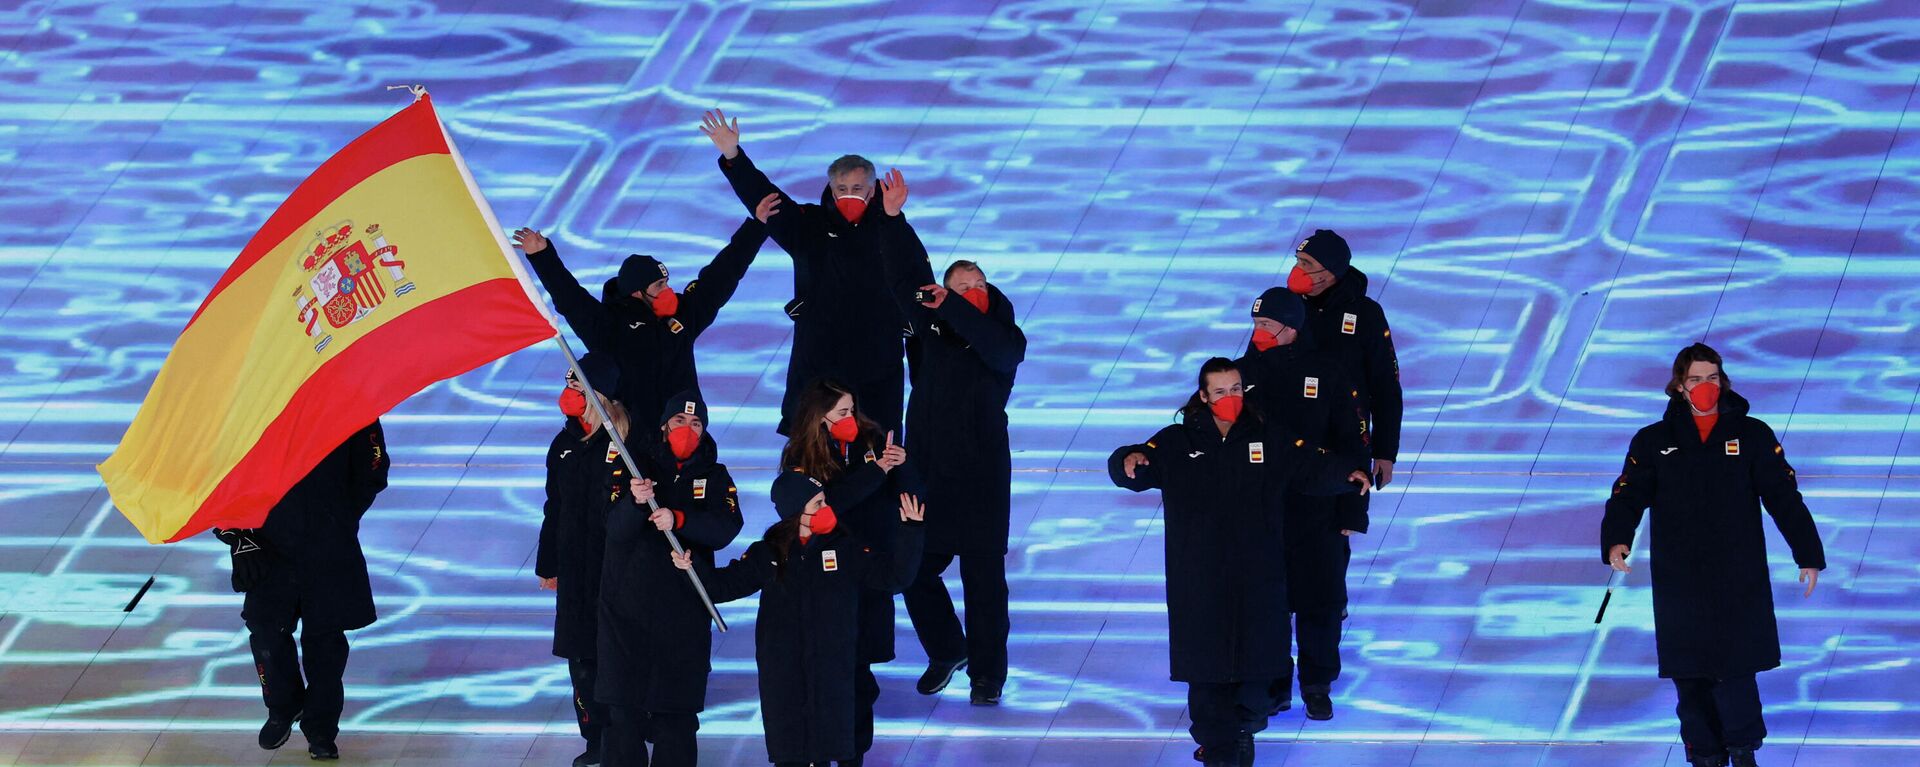 Los atletas españoles desfilan durante la ceremonia de apertura de los JJOO de Invierno en Pekín, China, el 4 de febrero de 2022 - Sputnik Mundo, 1920, 09.02.2022